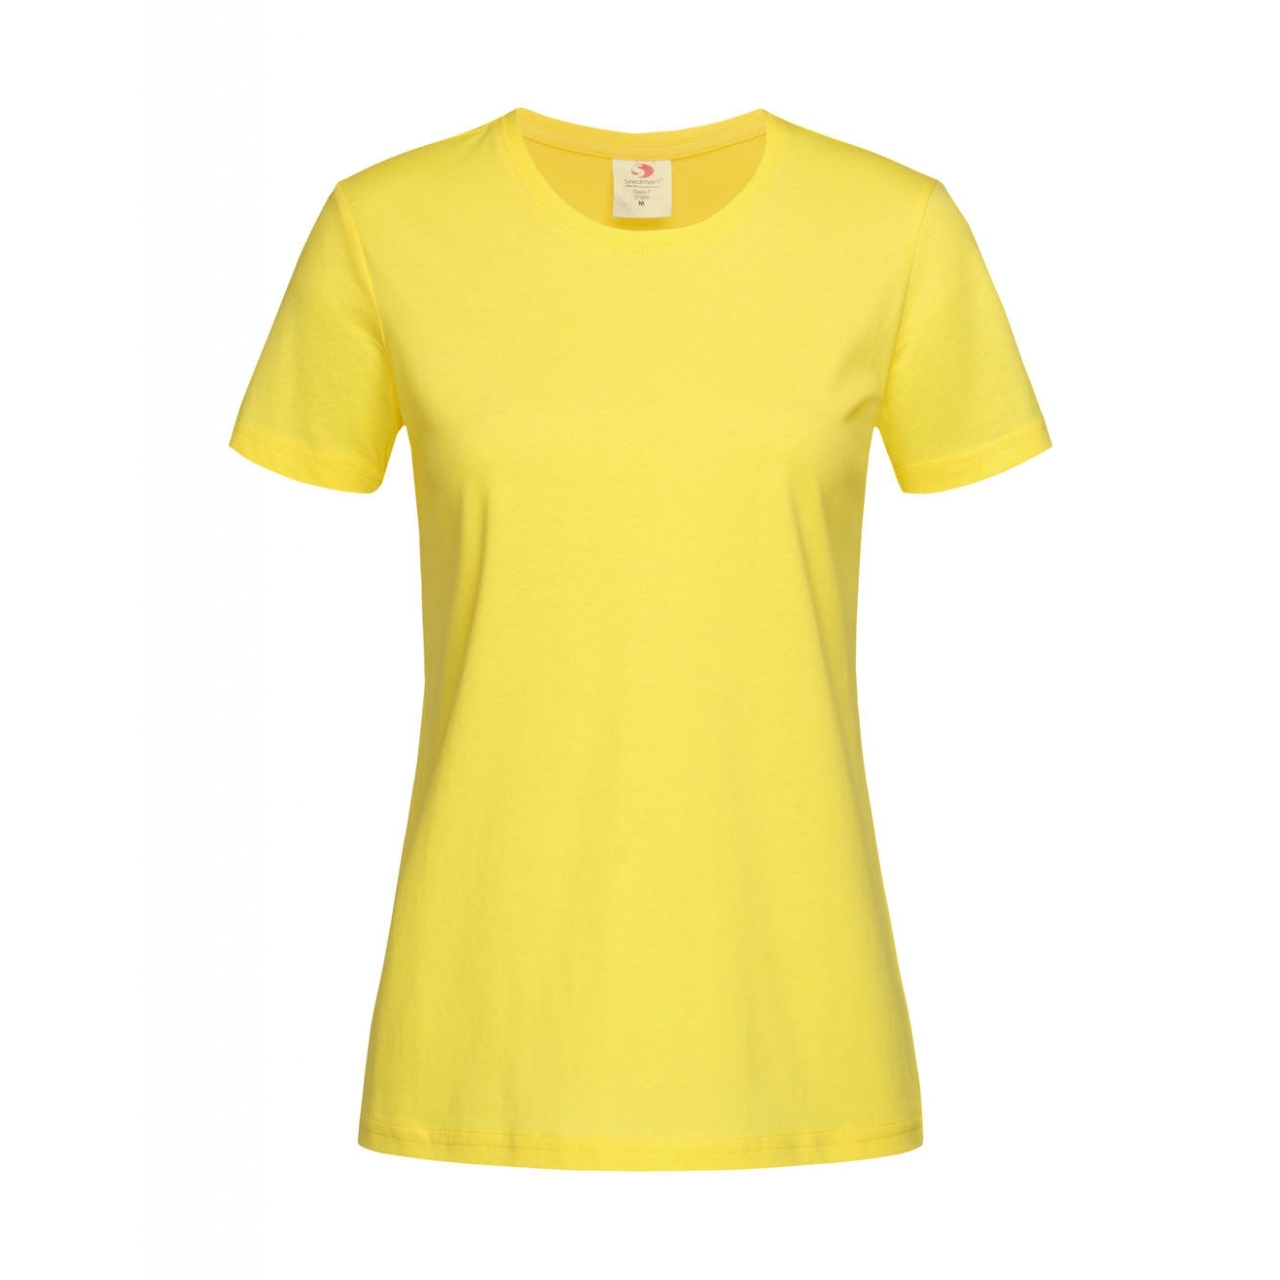 Tričko dámské Stedman Fitted s kulatým výstřihem - žluté, XXL